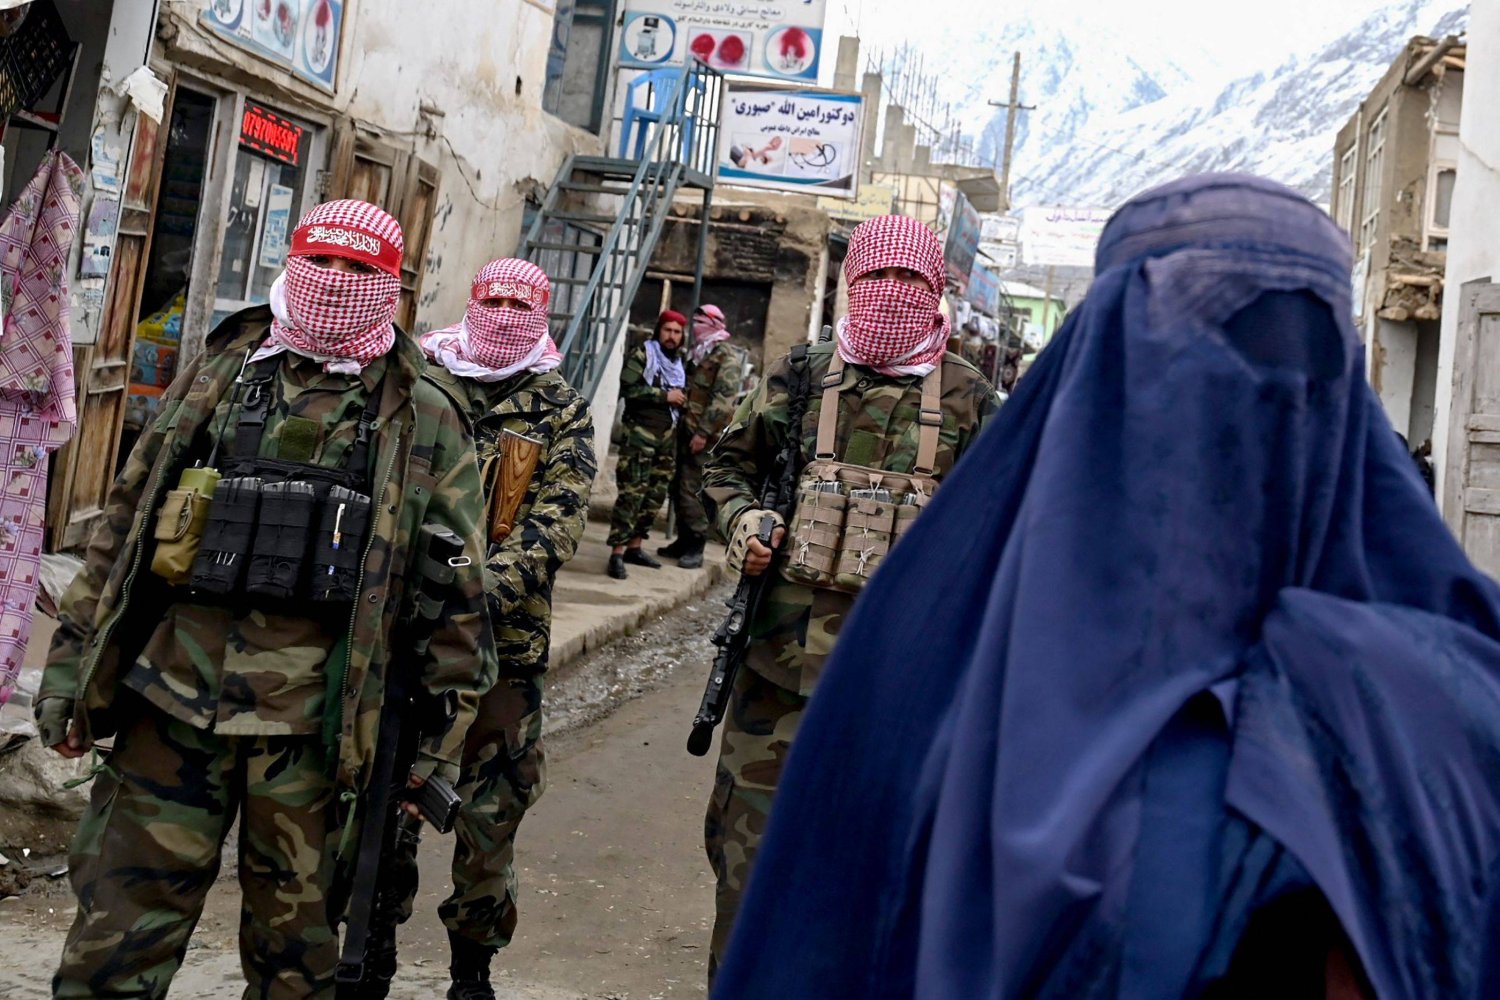 أفراد أمن «طالبان» يقفون للحراسة في حين تسير امرأة أفغانية ترتدي البرقع (على اليمين) على طول شارع في سوق في منطقة باهاراك بمقاطعة بدخشان (أ.ف.ب)